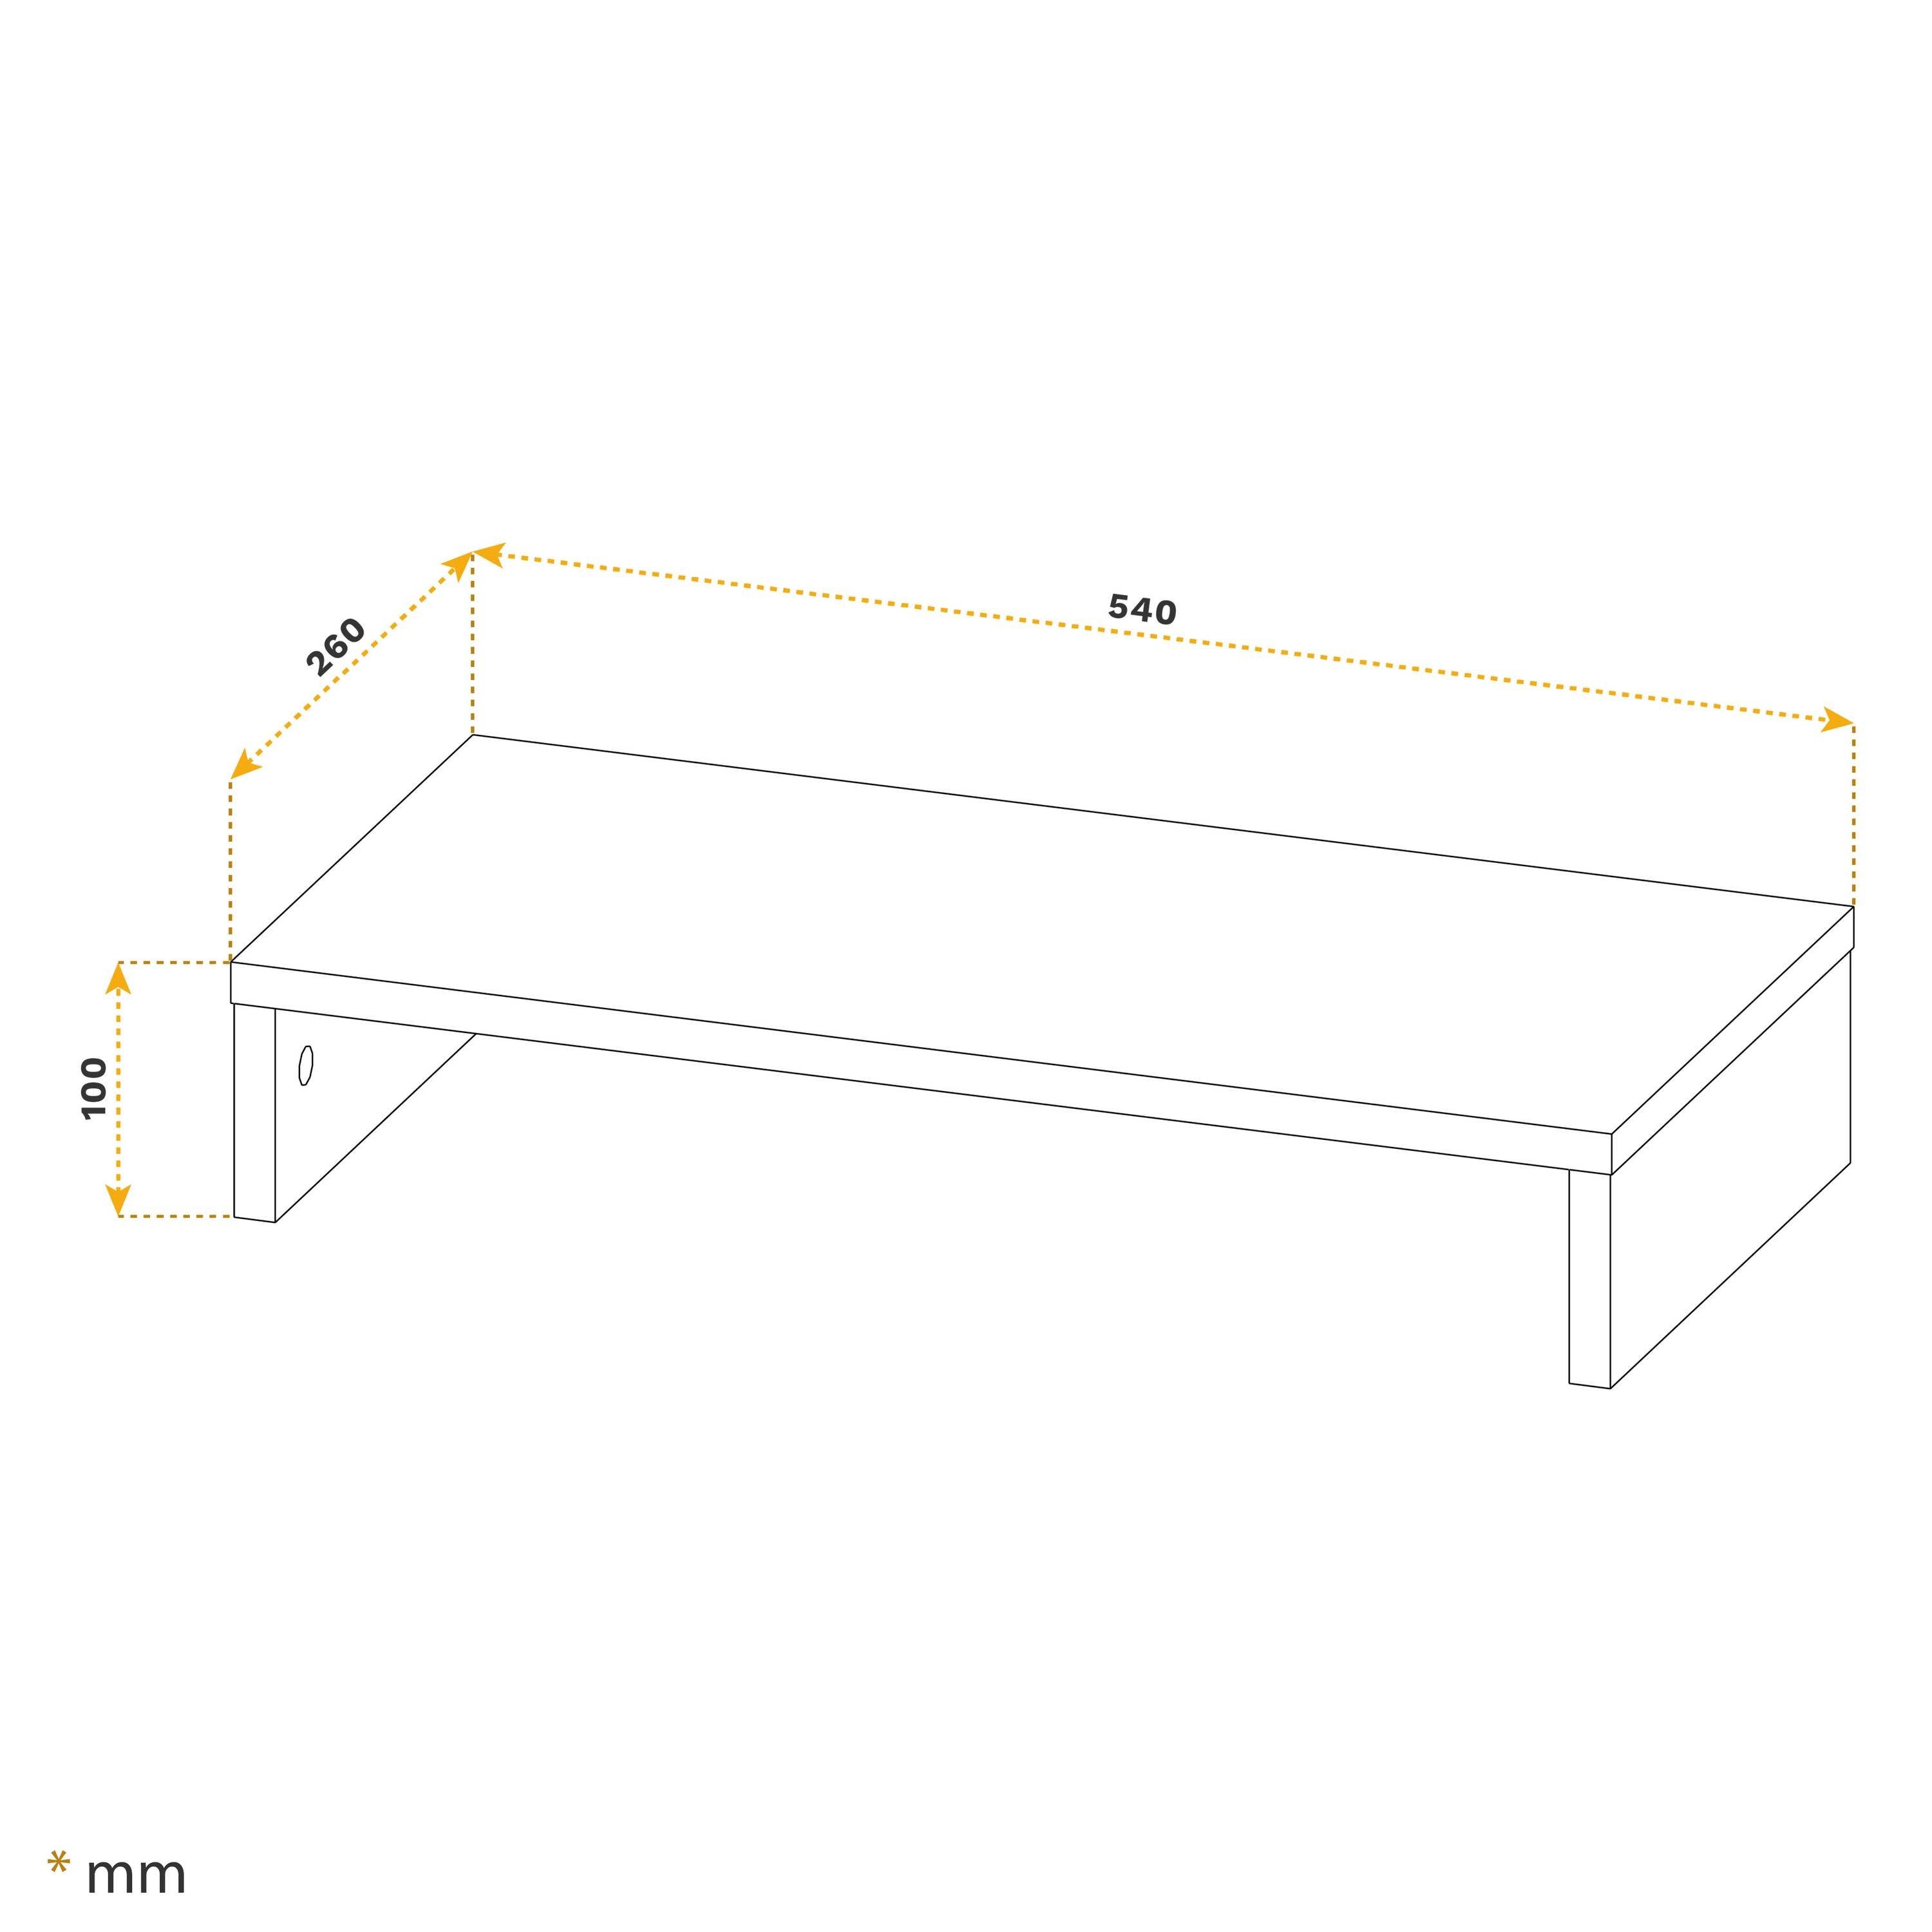 Beton-Grau Schreibtischaufsatz FS0113-BG, Aufsatz Tisch Schreibtisch Monitorerhöhung RICOO Monitorständer Bildschirm